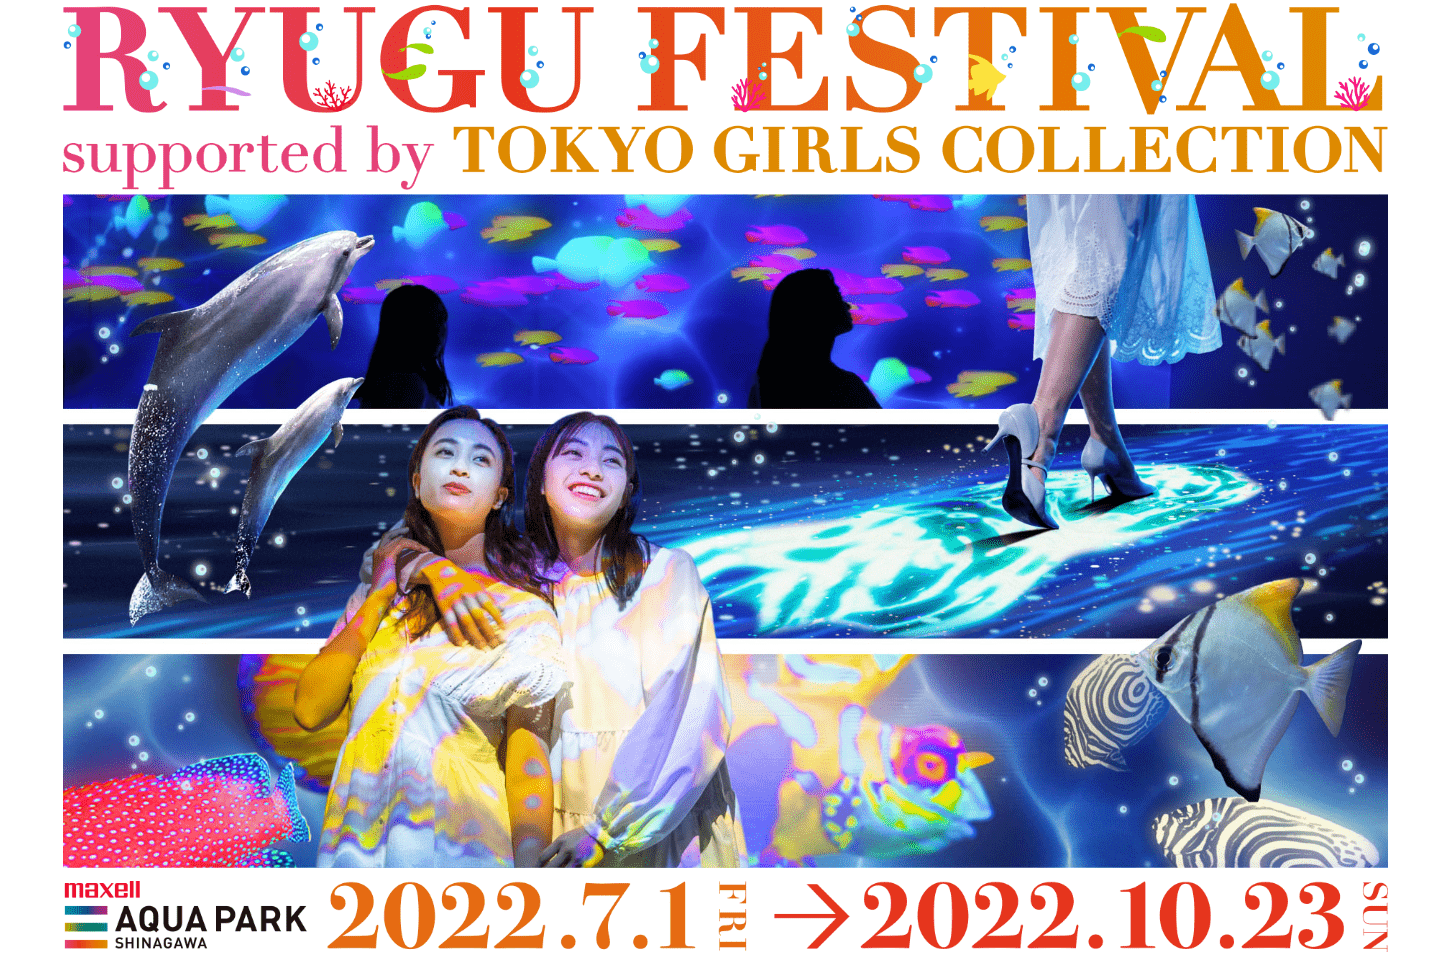 Ryugu festival